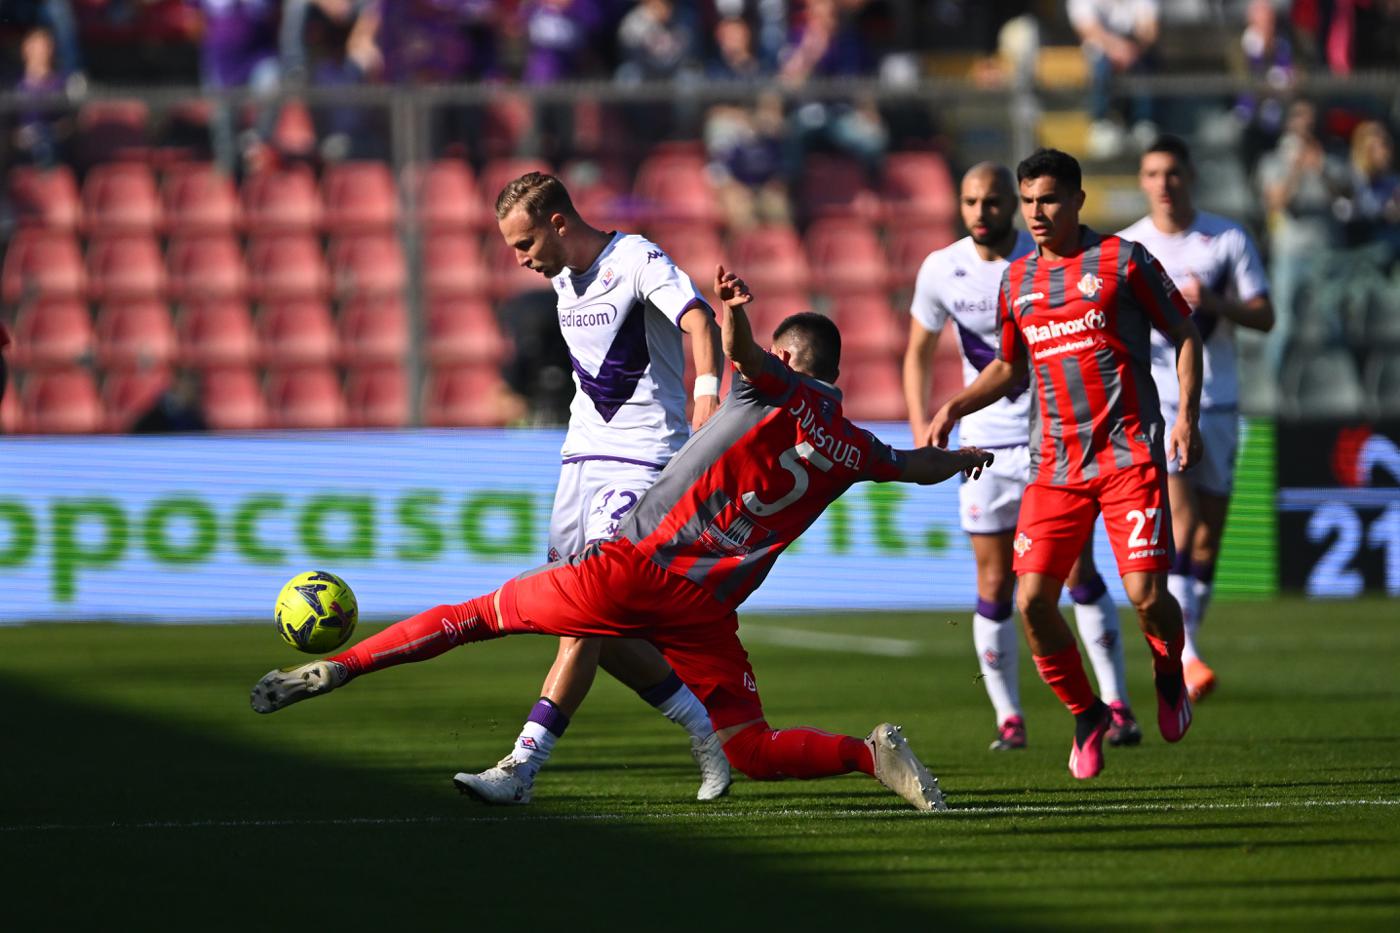 Cremonese - Fiorentina - 0-2. Italienische Meisterschaft, Runde 26. Spielbericht, Statistik.